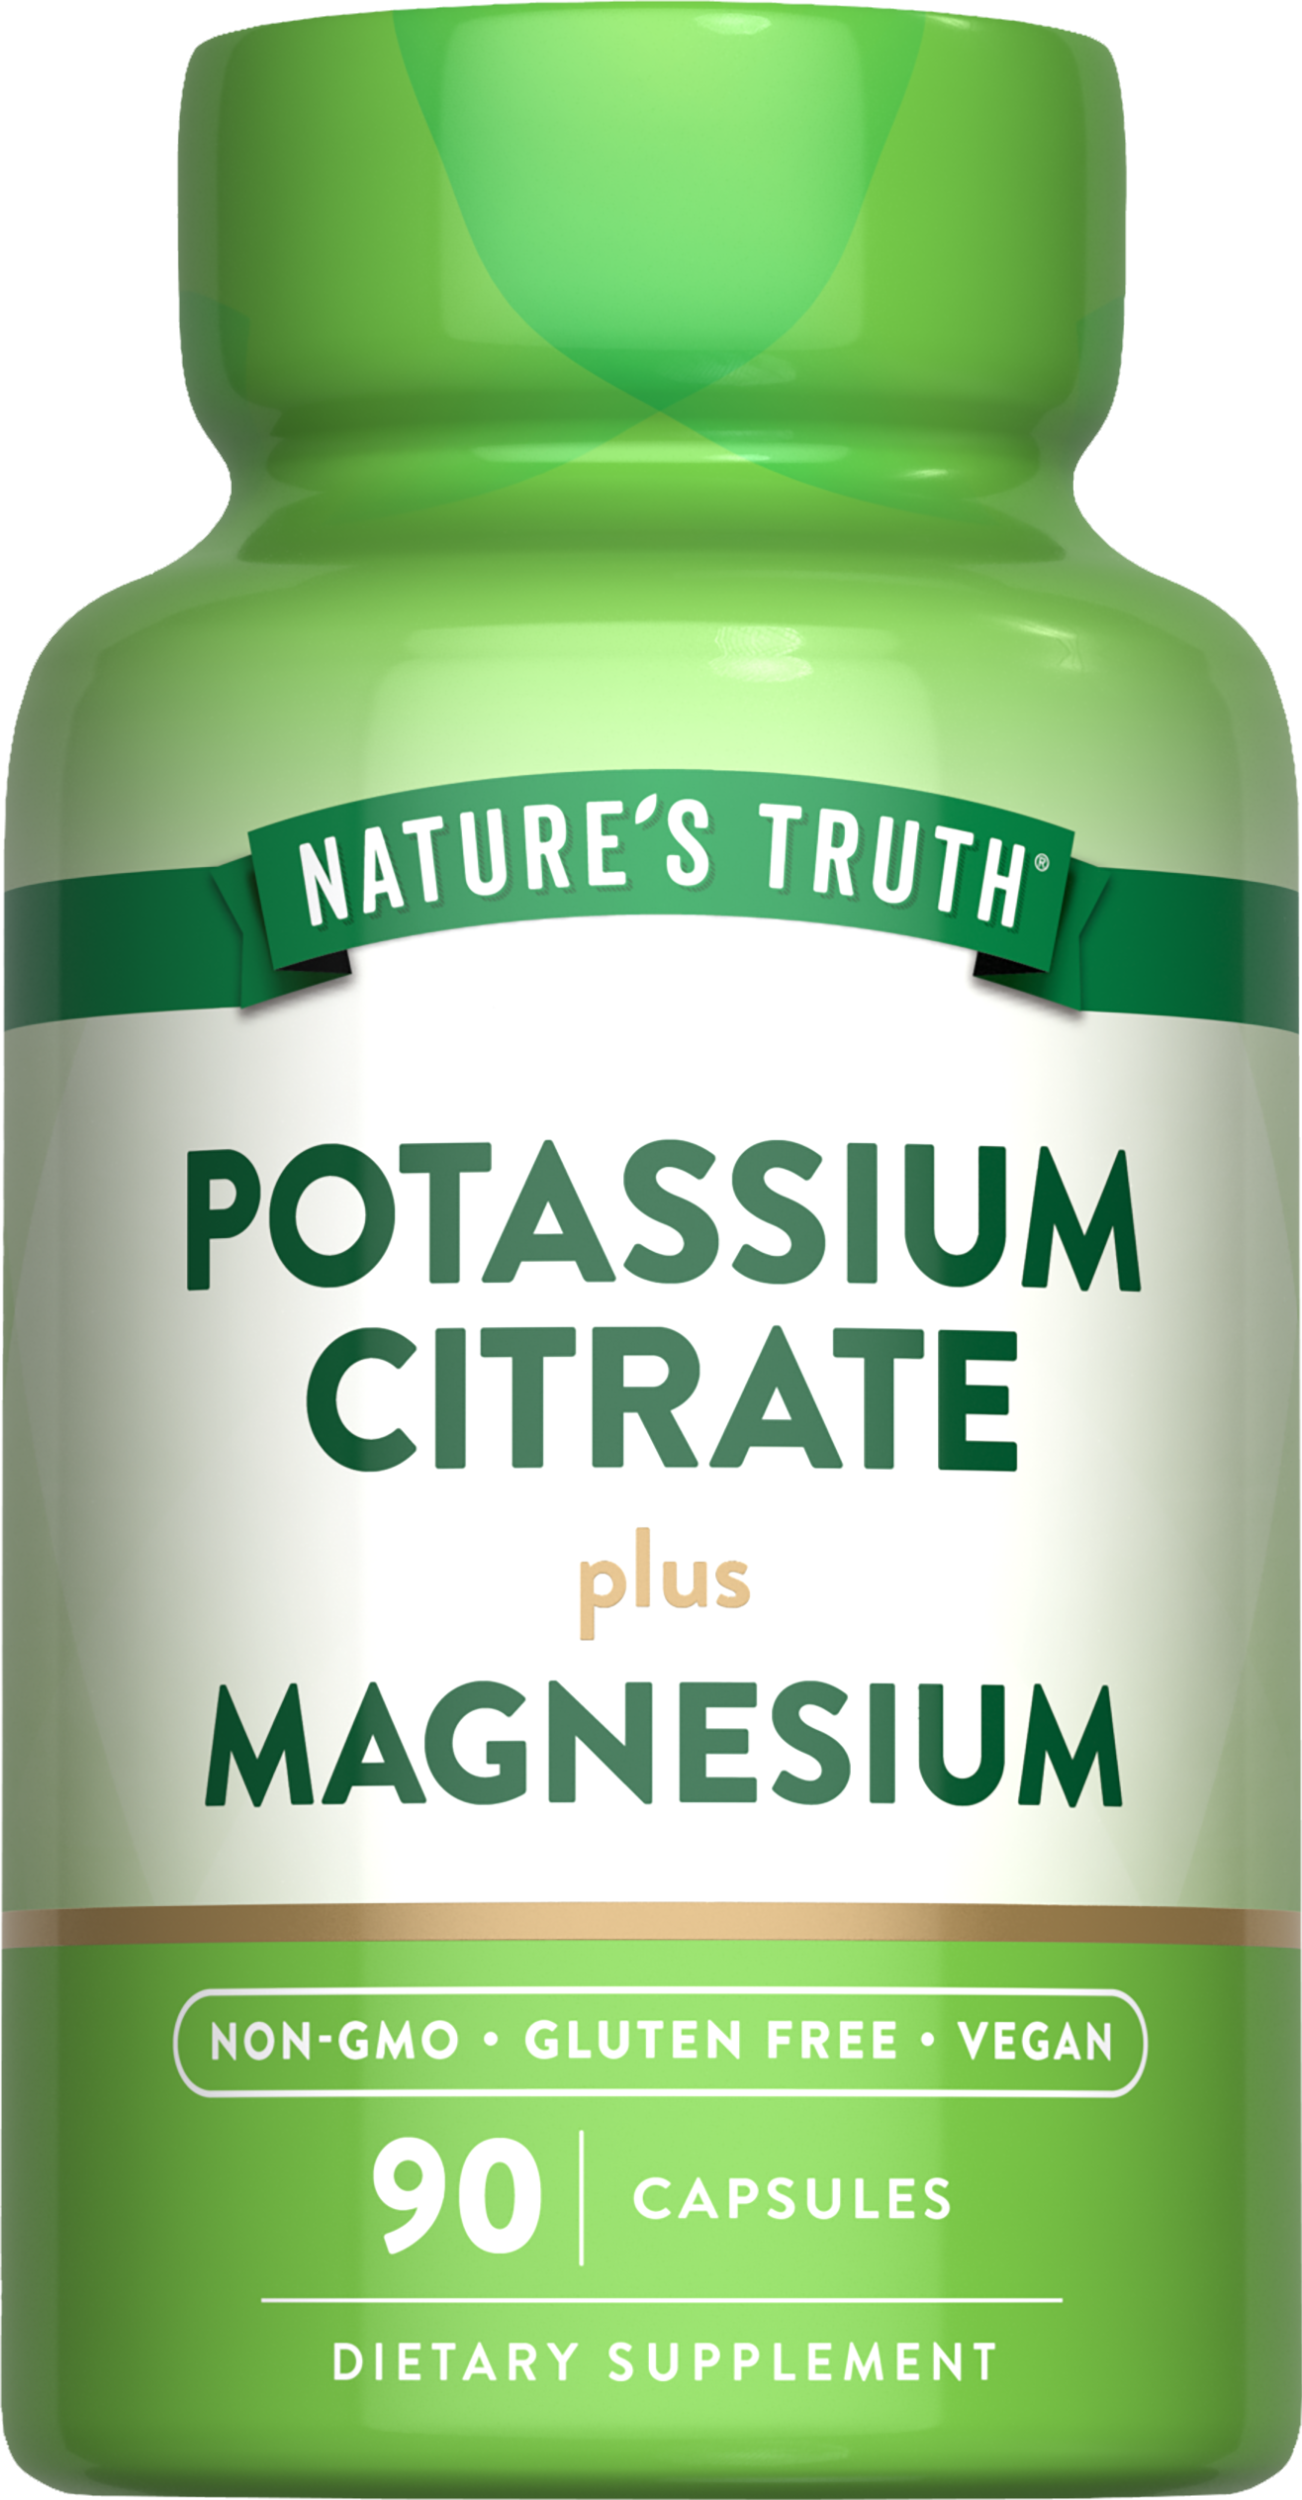 Potassium Citrate plus Magnesium